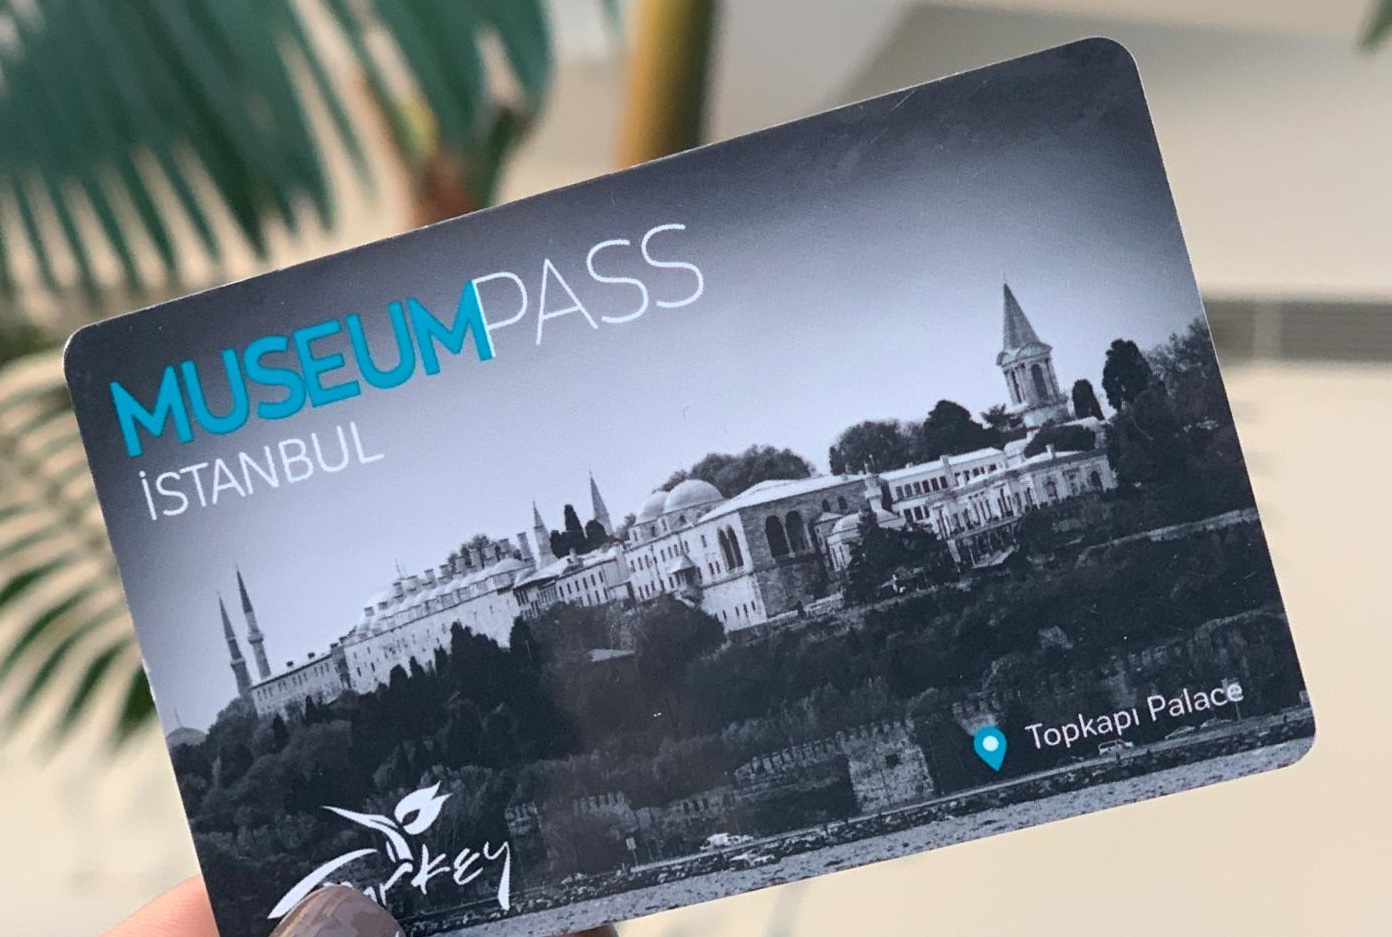 Museum pass, ingresso completo para visitas em Istambul